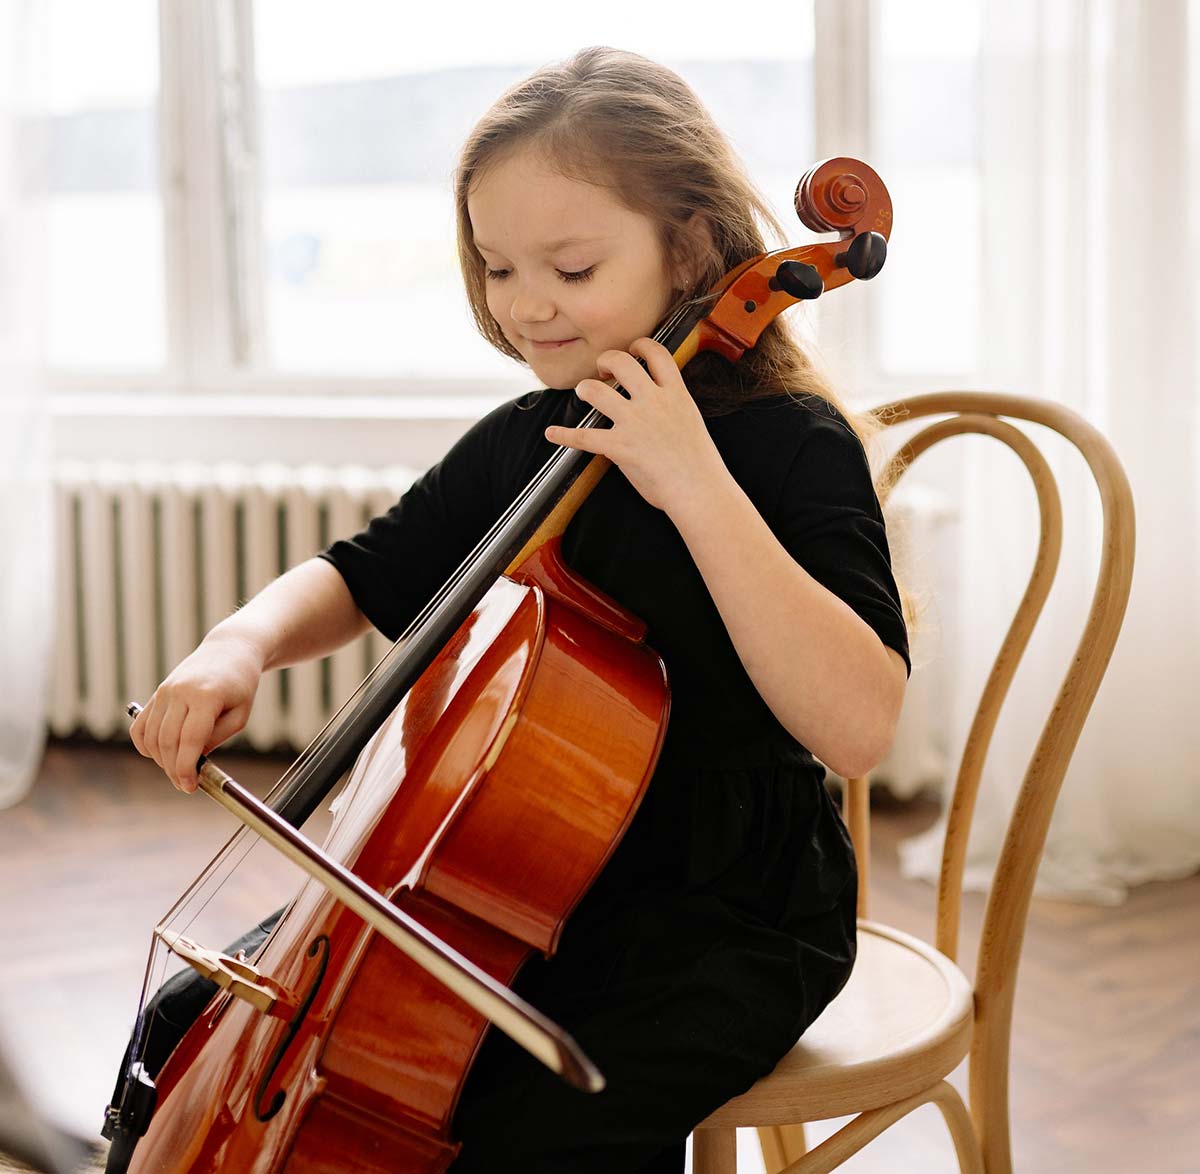 Wiplay, Apprendre le violoncelle